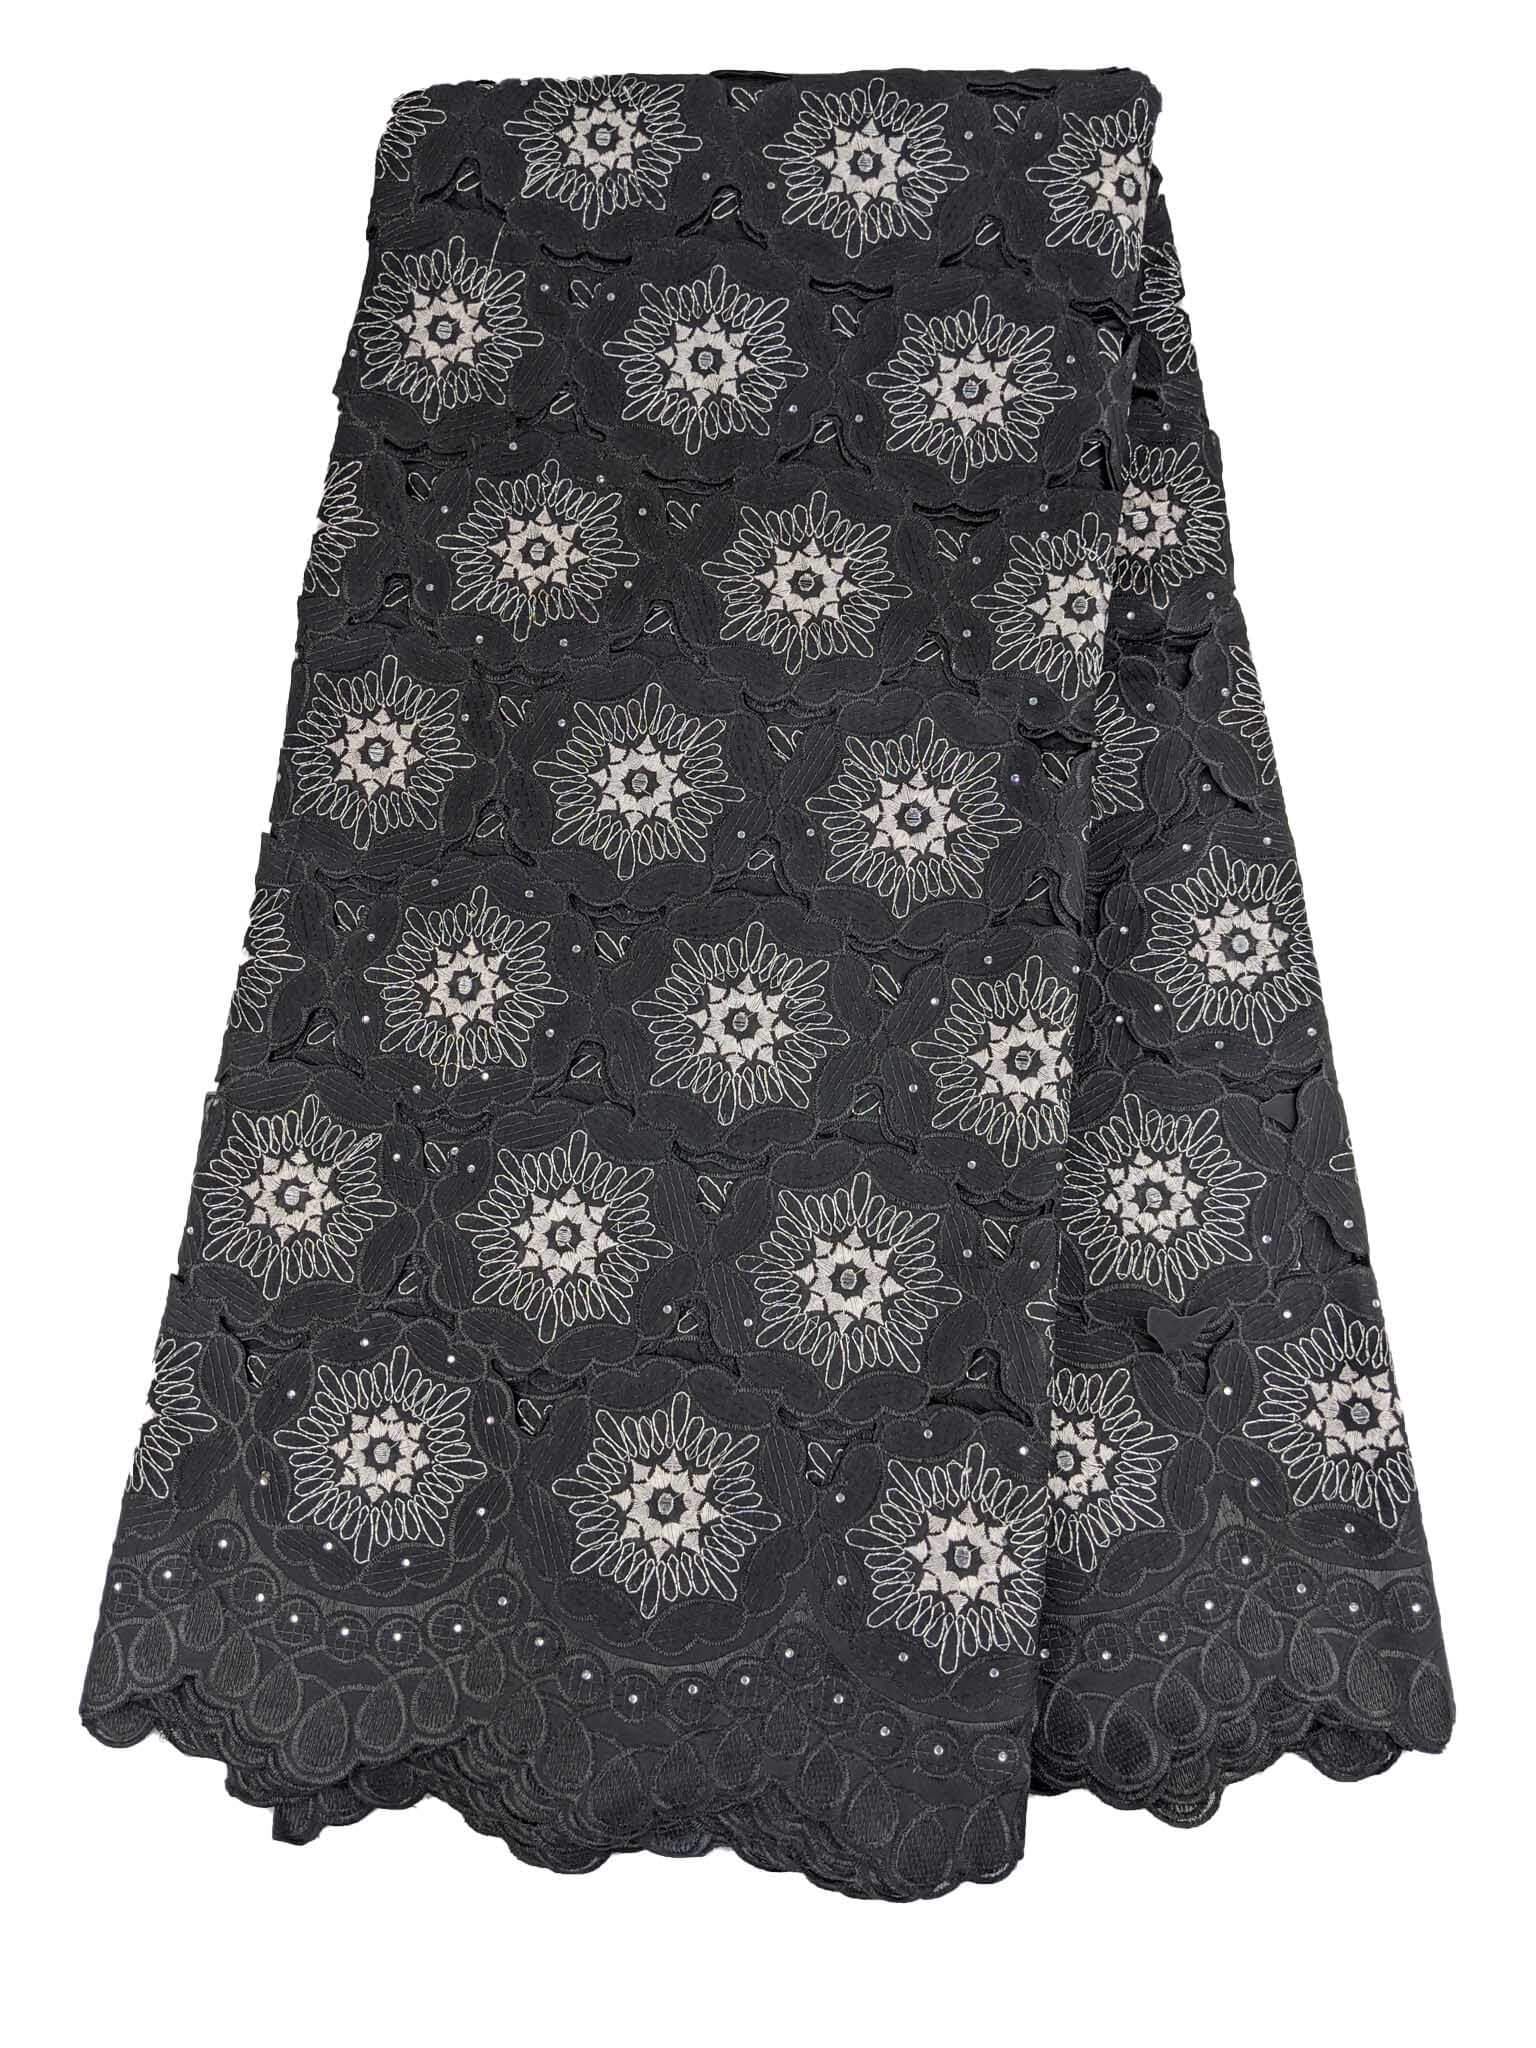 Black & Silver Handcut Cotton Lace